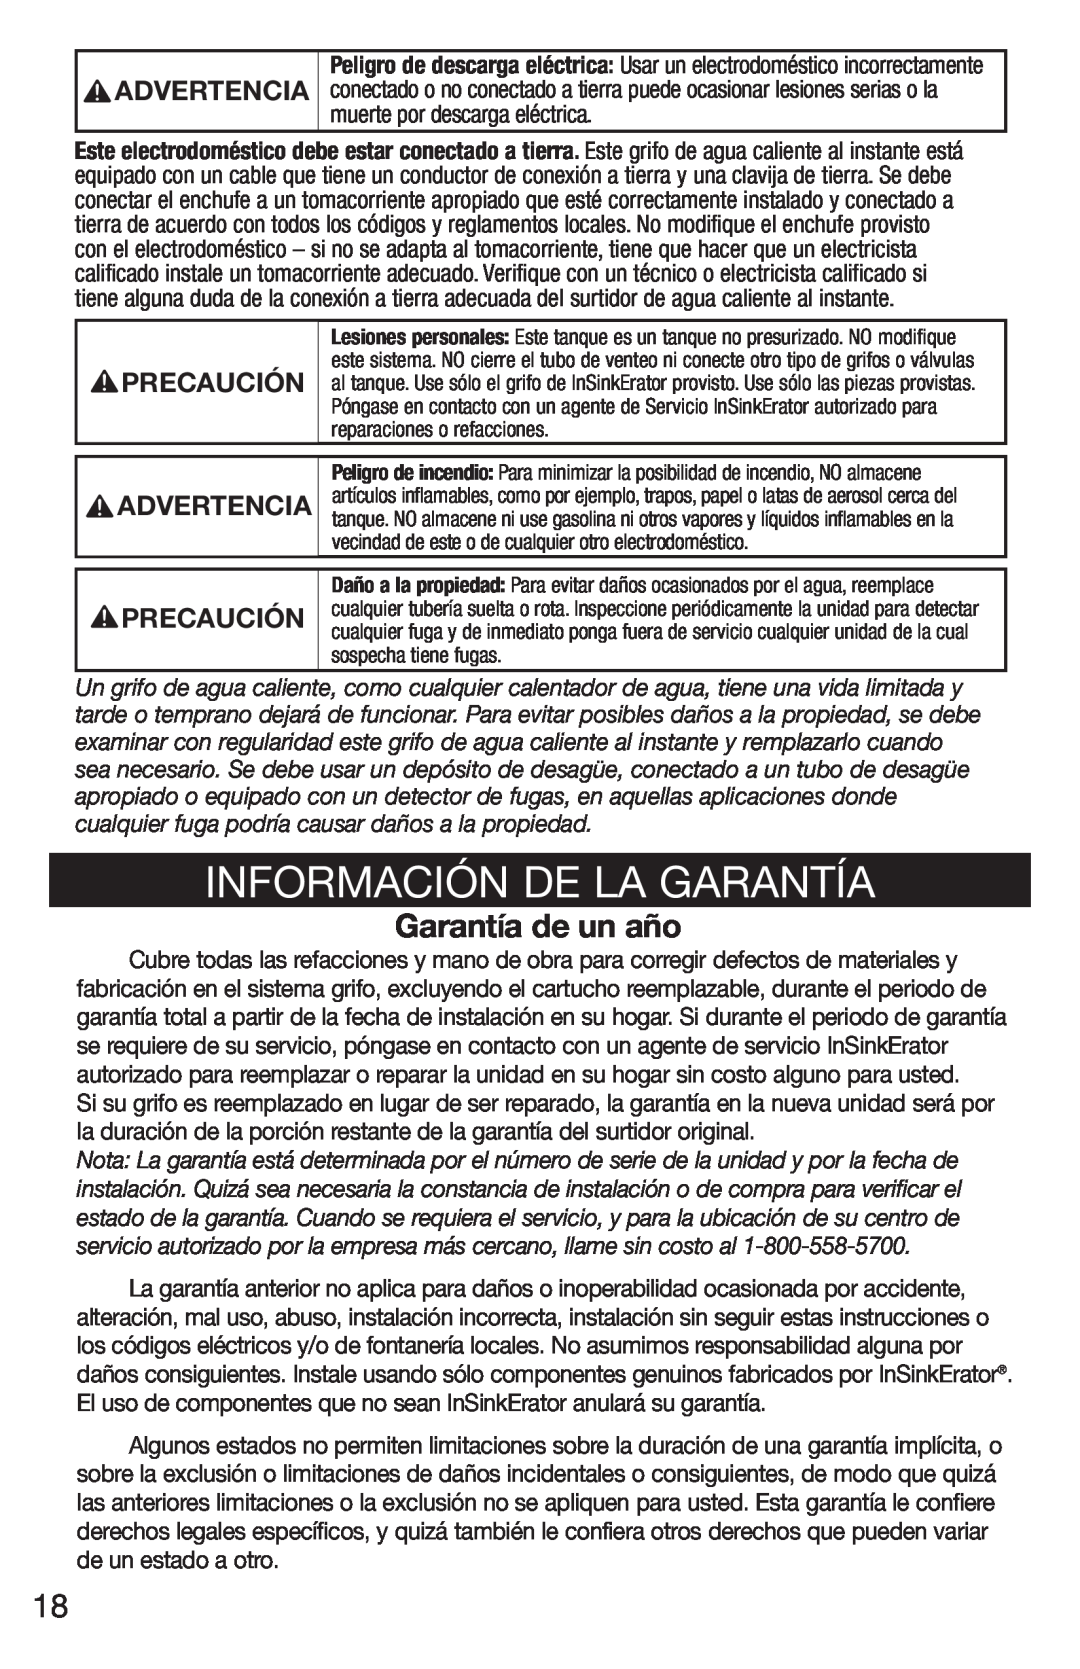 Emerson UWL owner manual Información De La Garantía, Garantía de un año, Advertencia, Precaución 